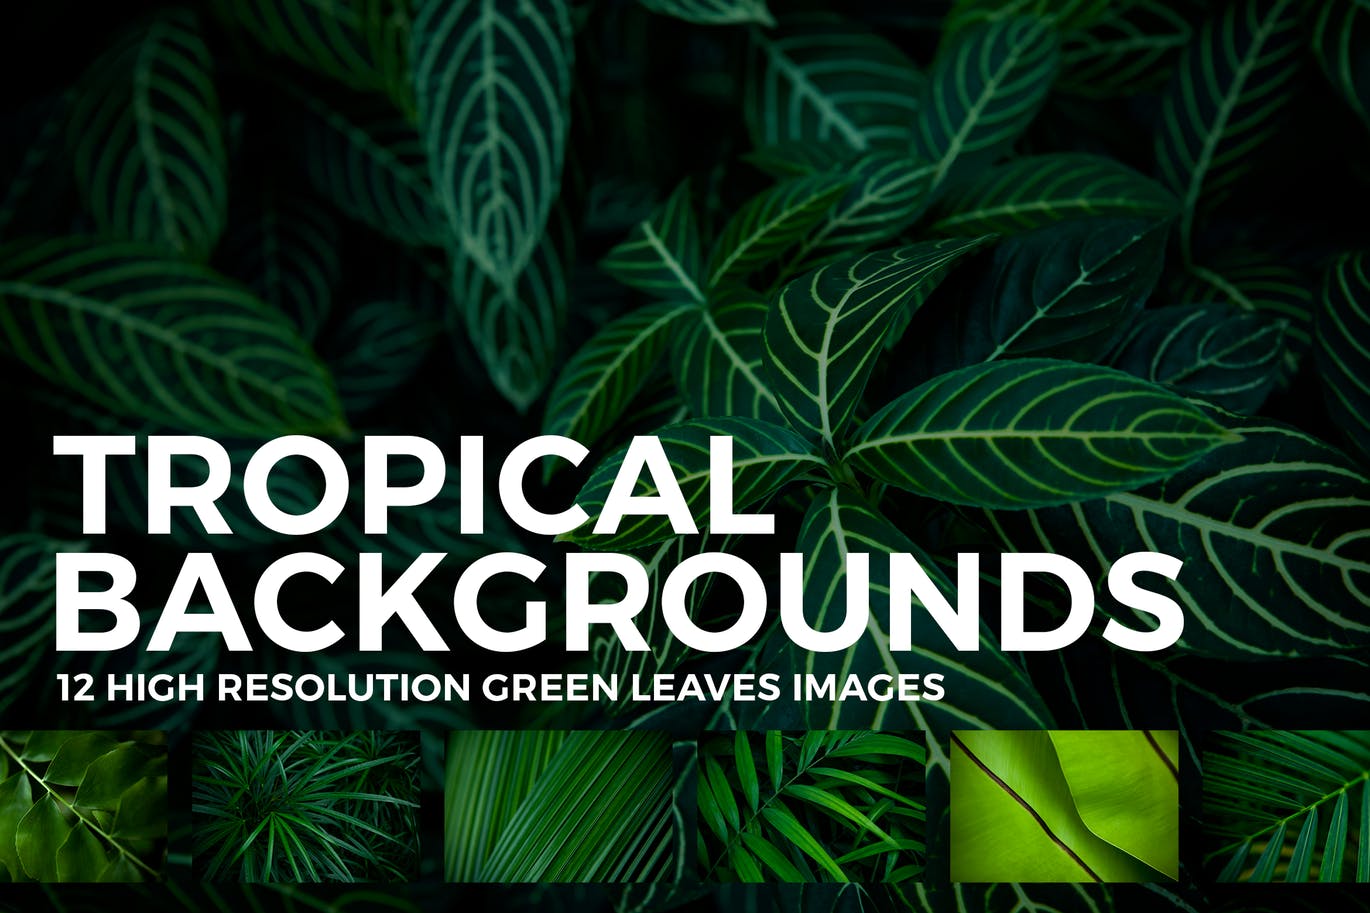 12张热带植物叶子高清背景图素材 12 Tropical Leaves Backgrounds插图